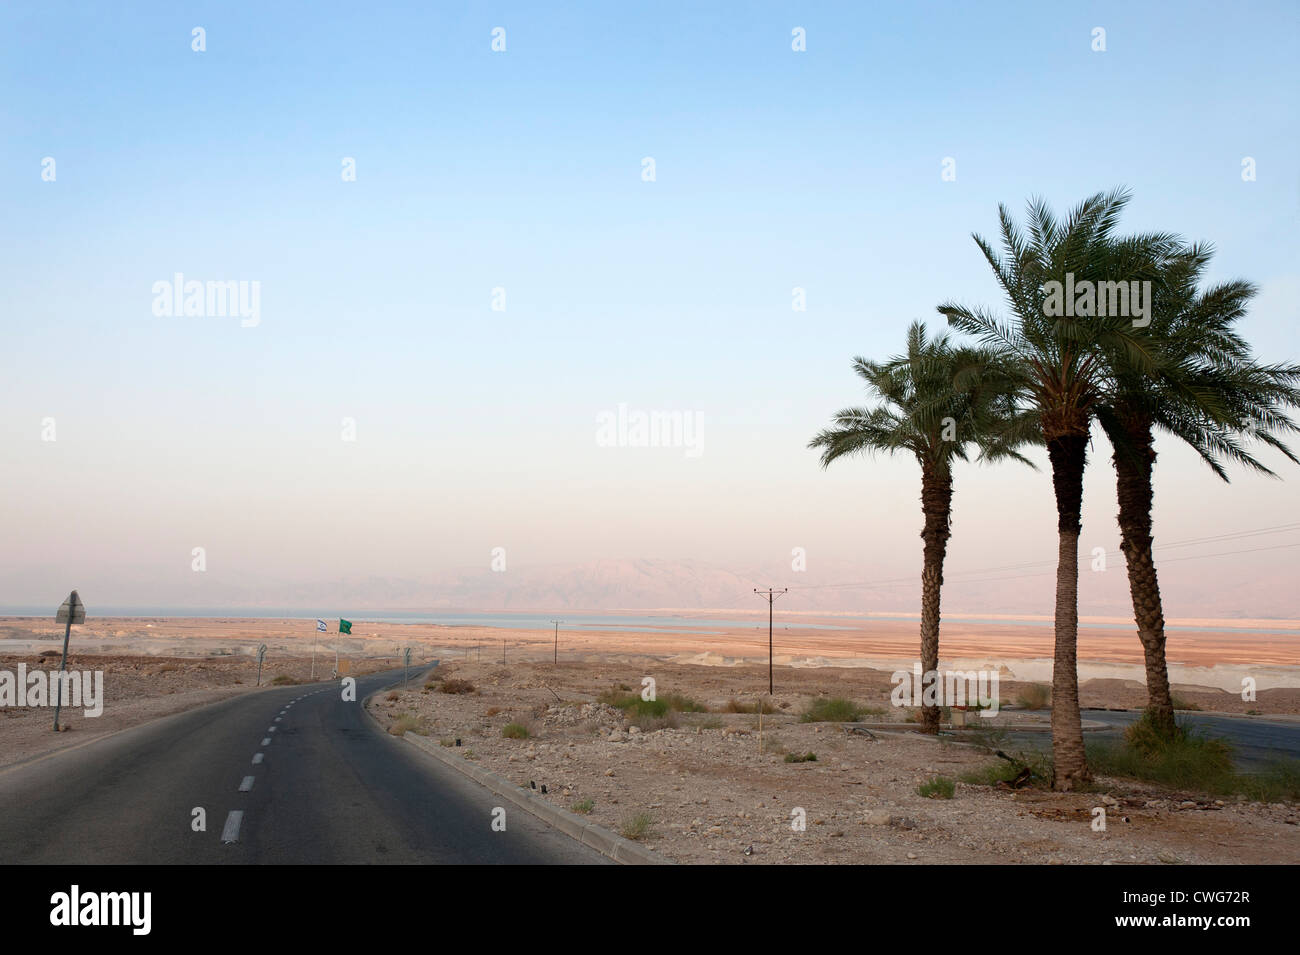 Une route à travers le désert de flexion avec une vue sur la Mer Morte dans la distance et de palmiers sur la droite, Israël Banque D'Images